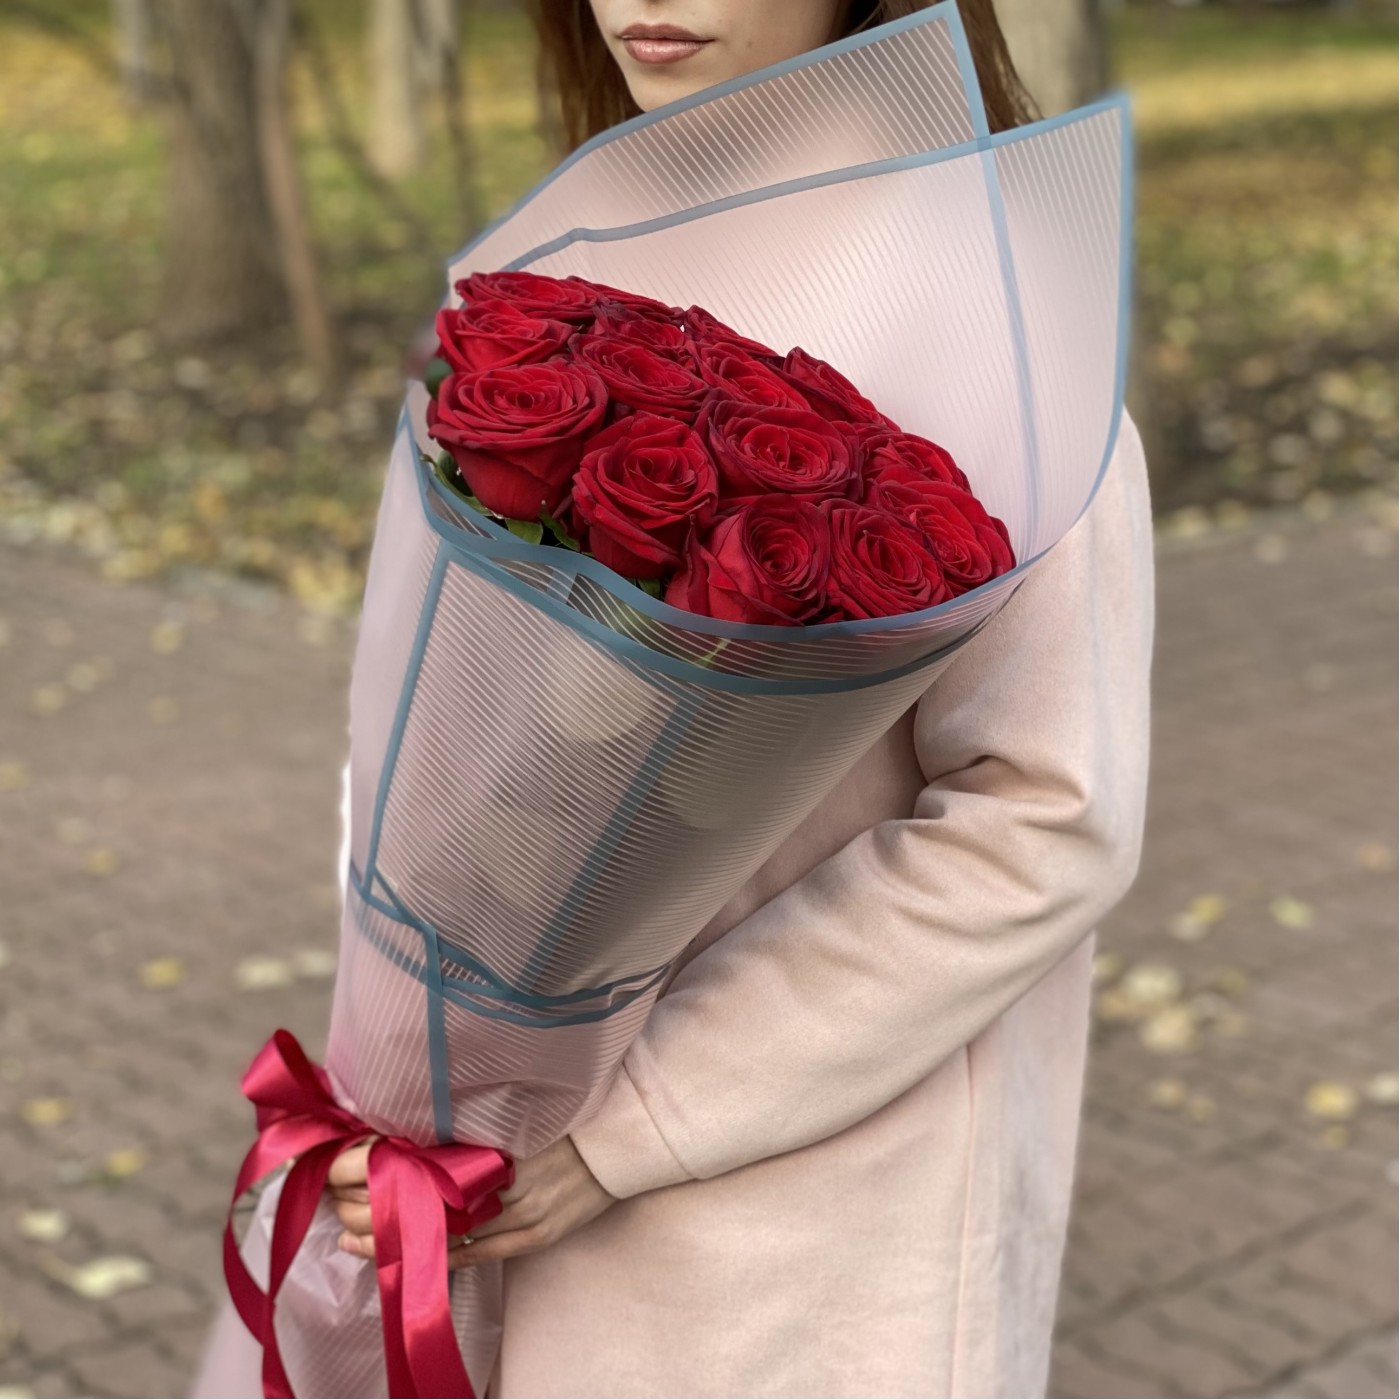 15 длинных красных роз Эксплорер 80 см